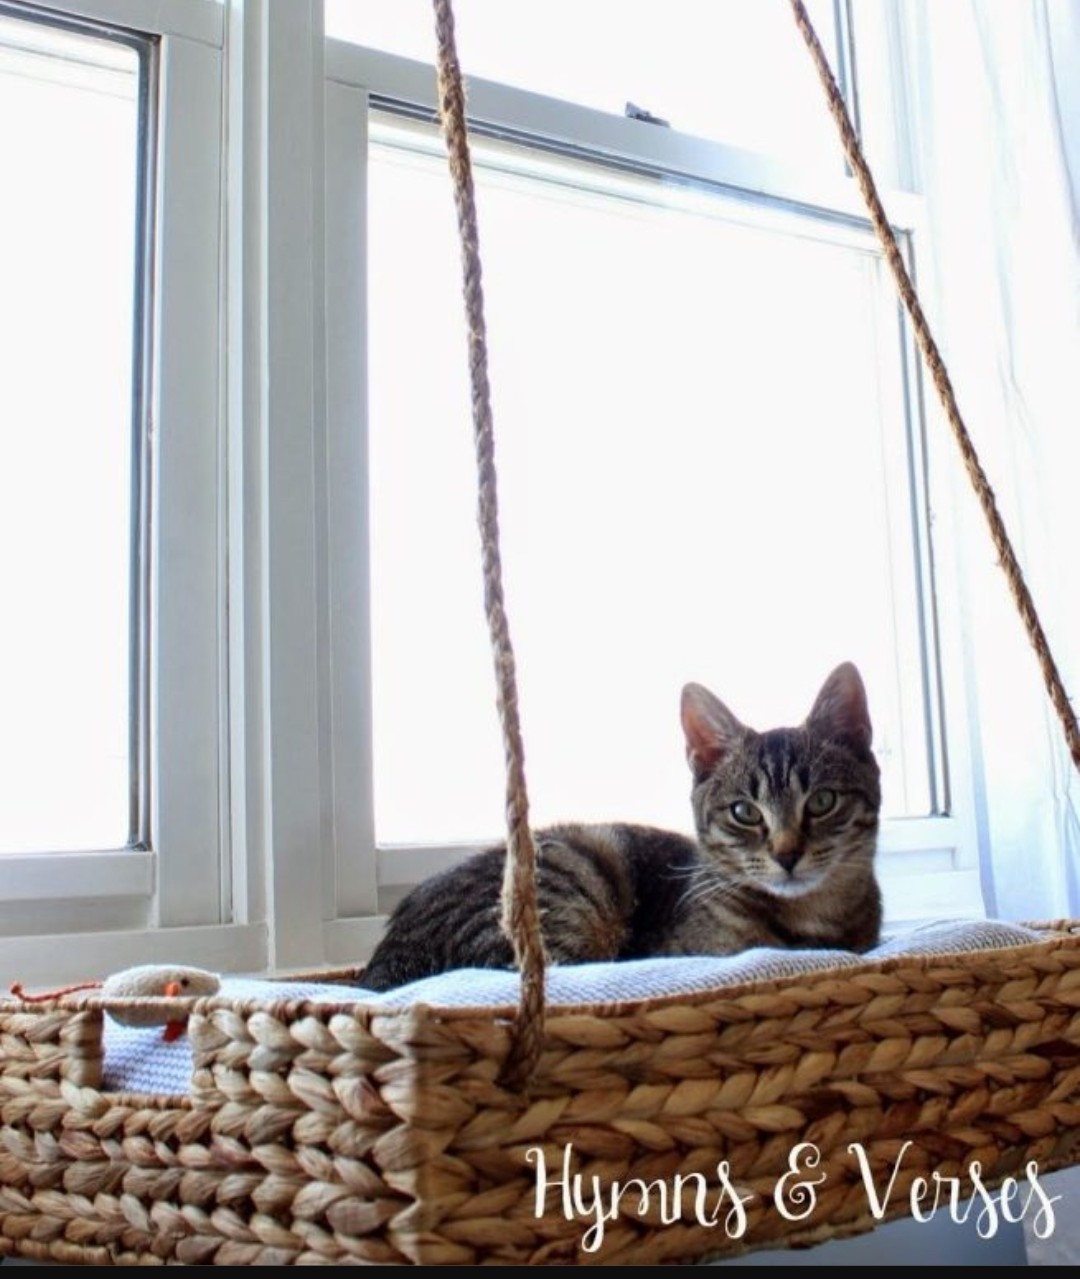 Cat basket by window